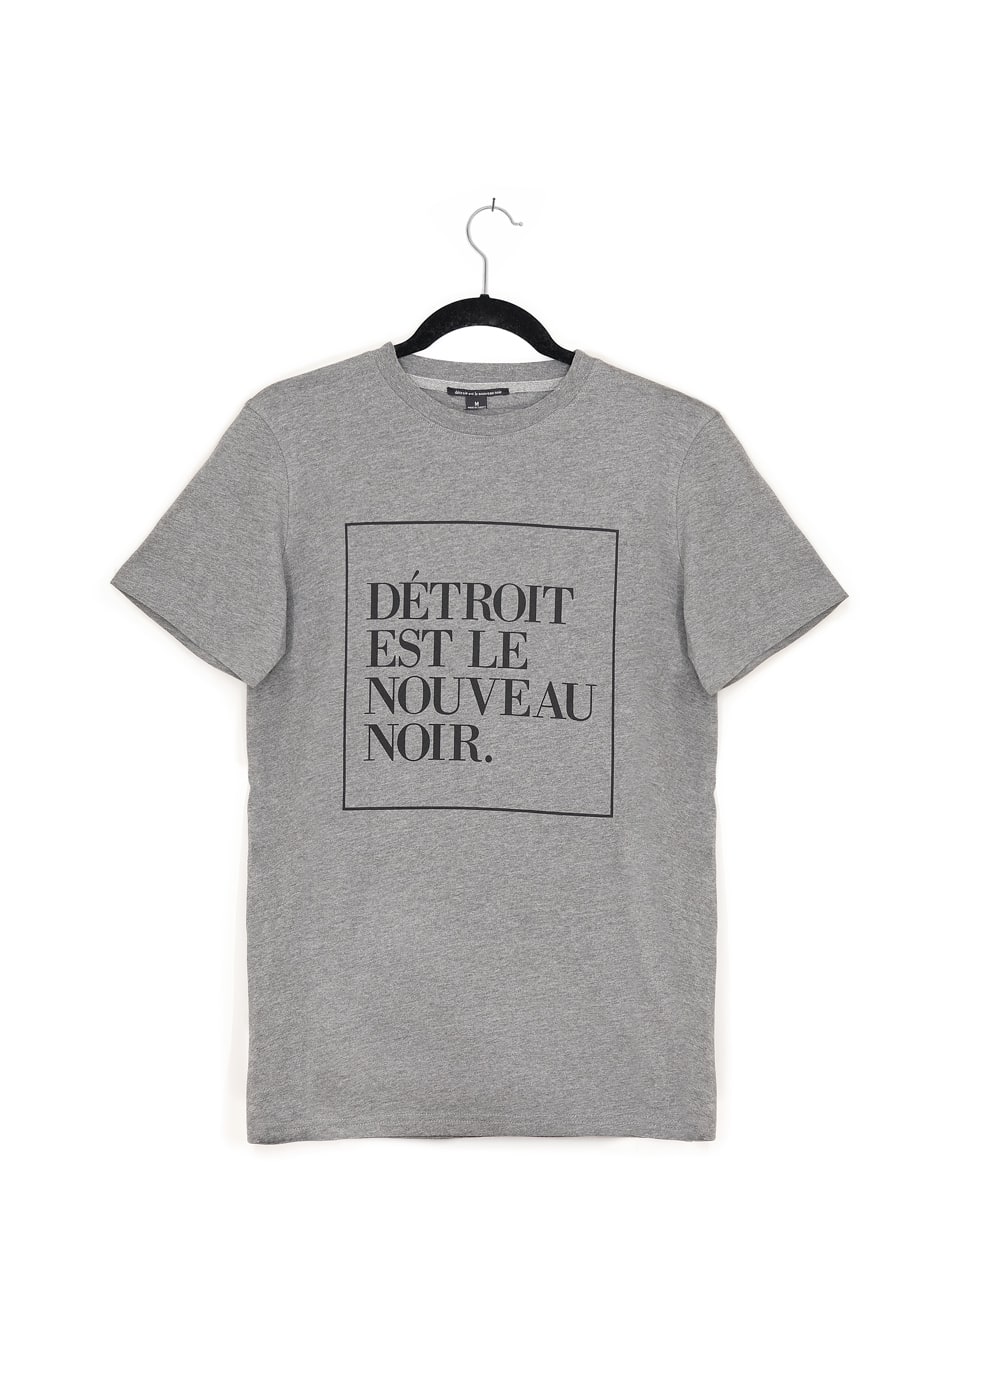 Detroit is the New Black. – Détroit is the New Black.